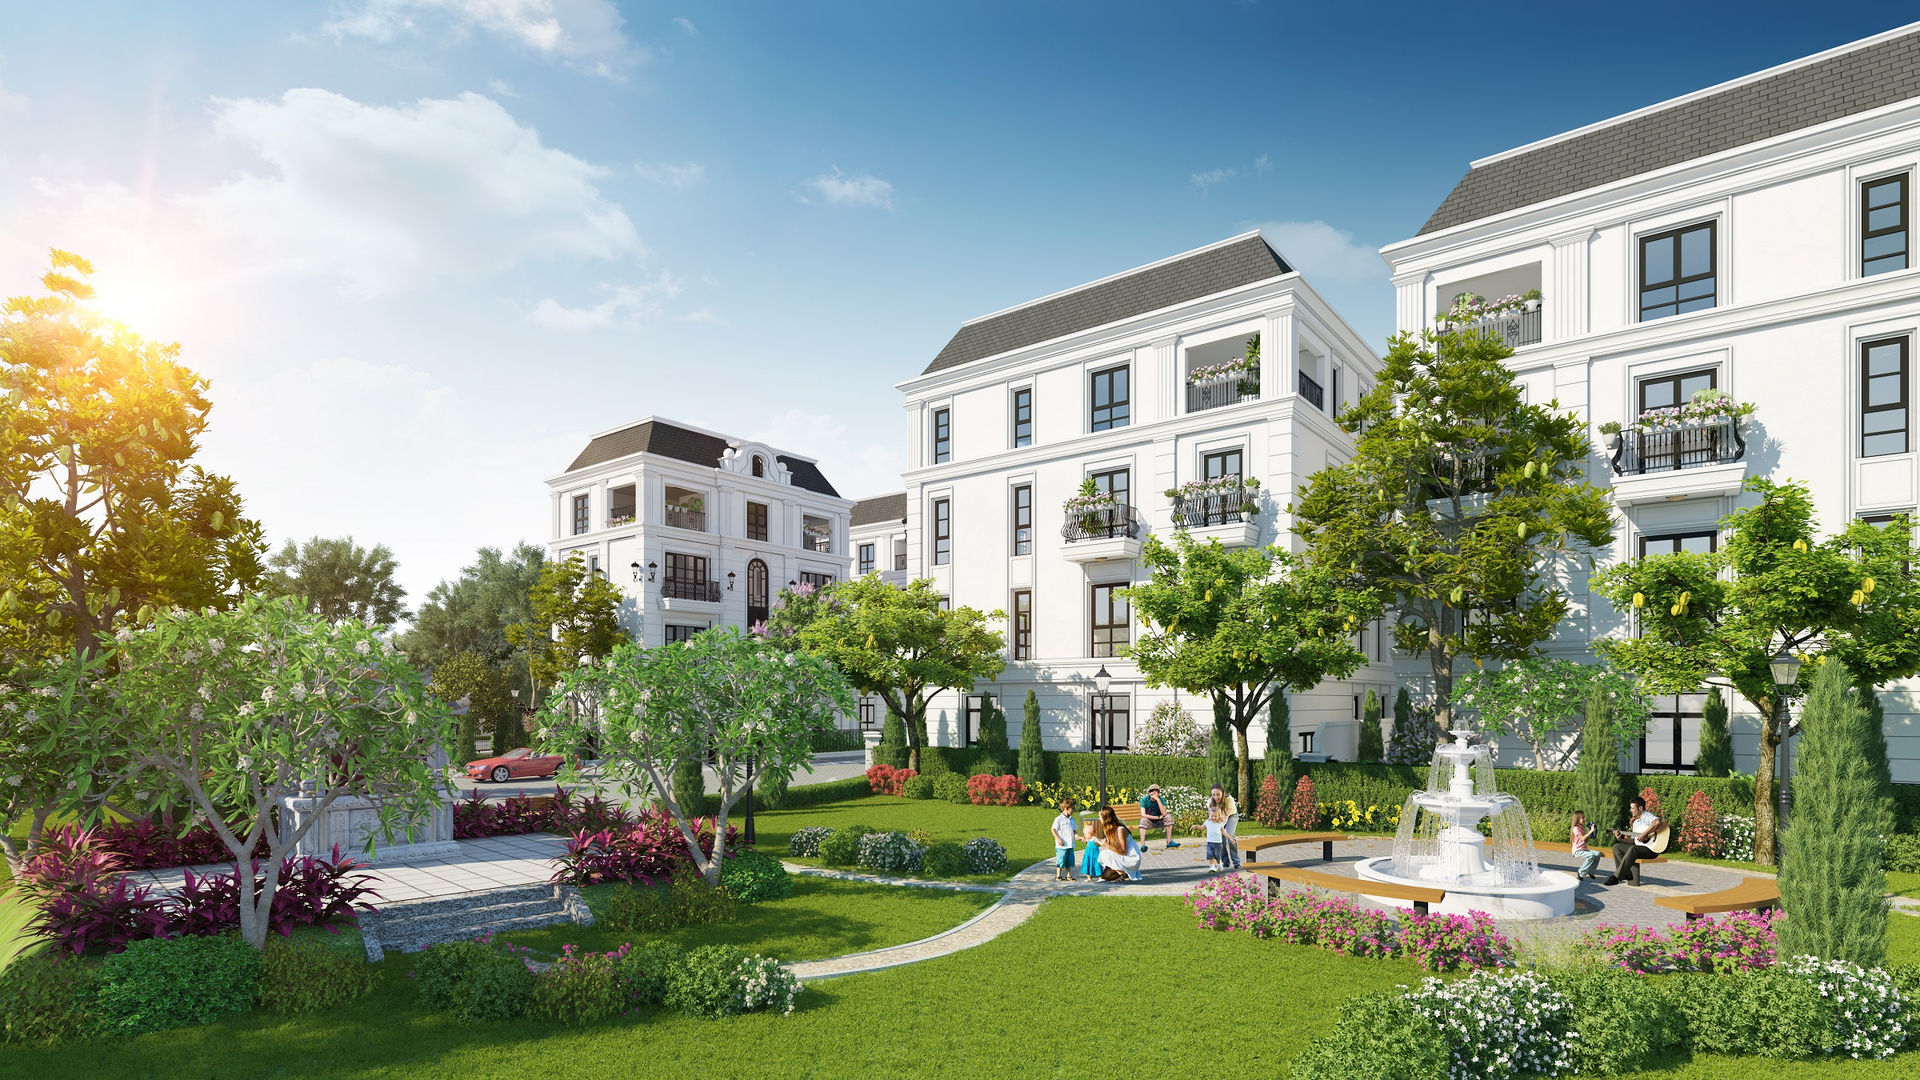   Elegant Park Villa đang là tâm điểm đầu tư tại Long Biên  